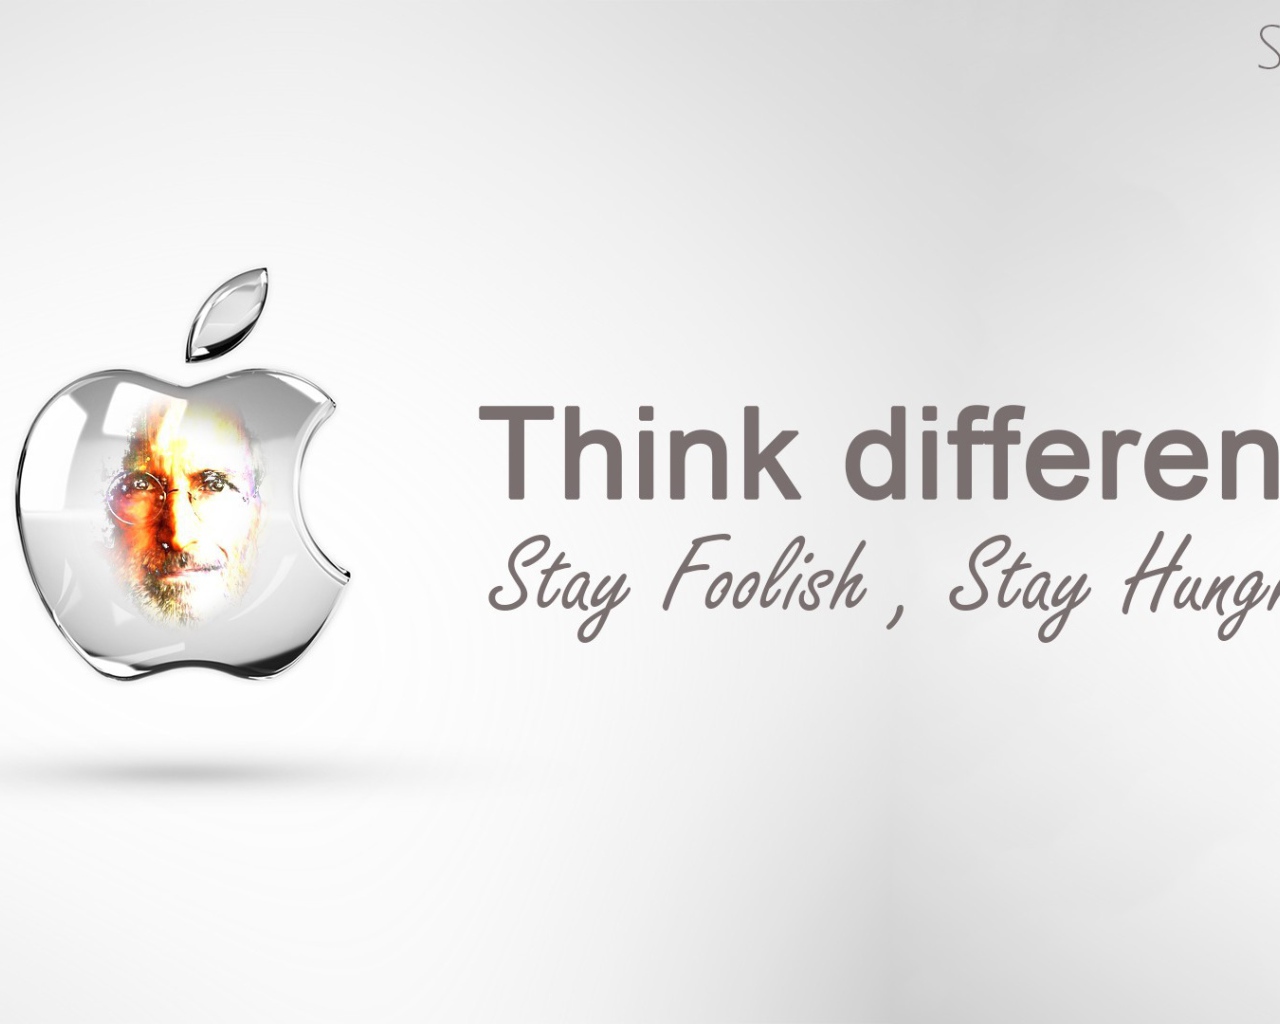 Реклама Apple